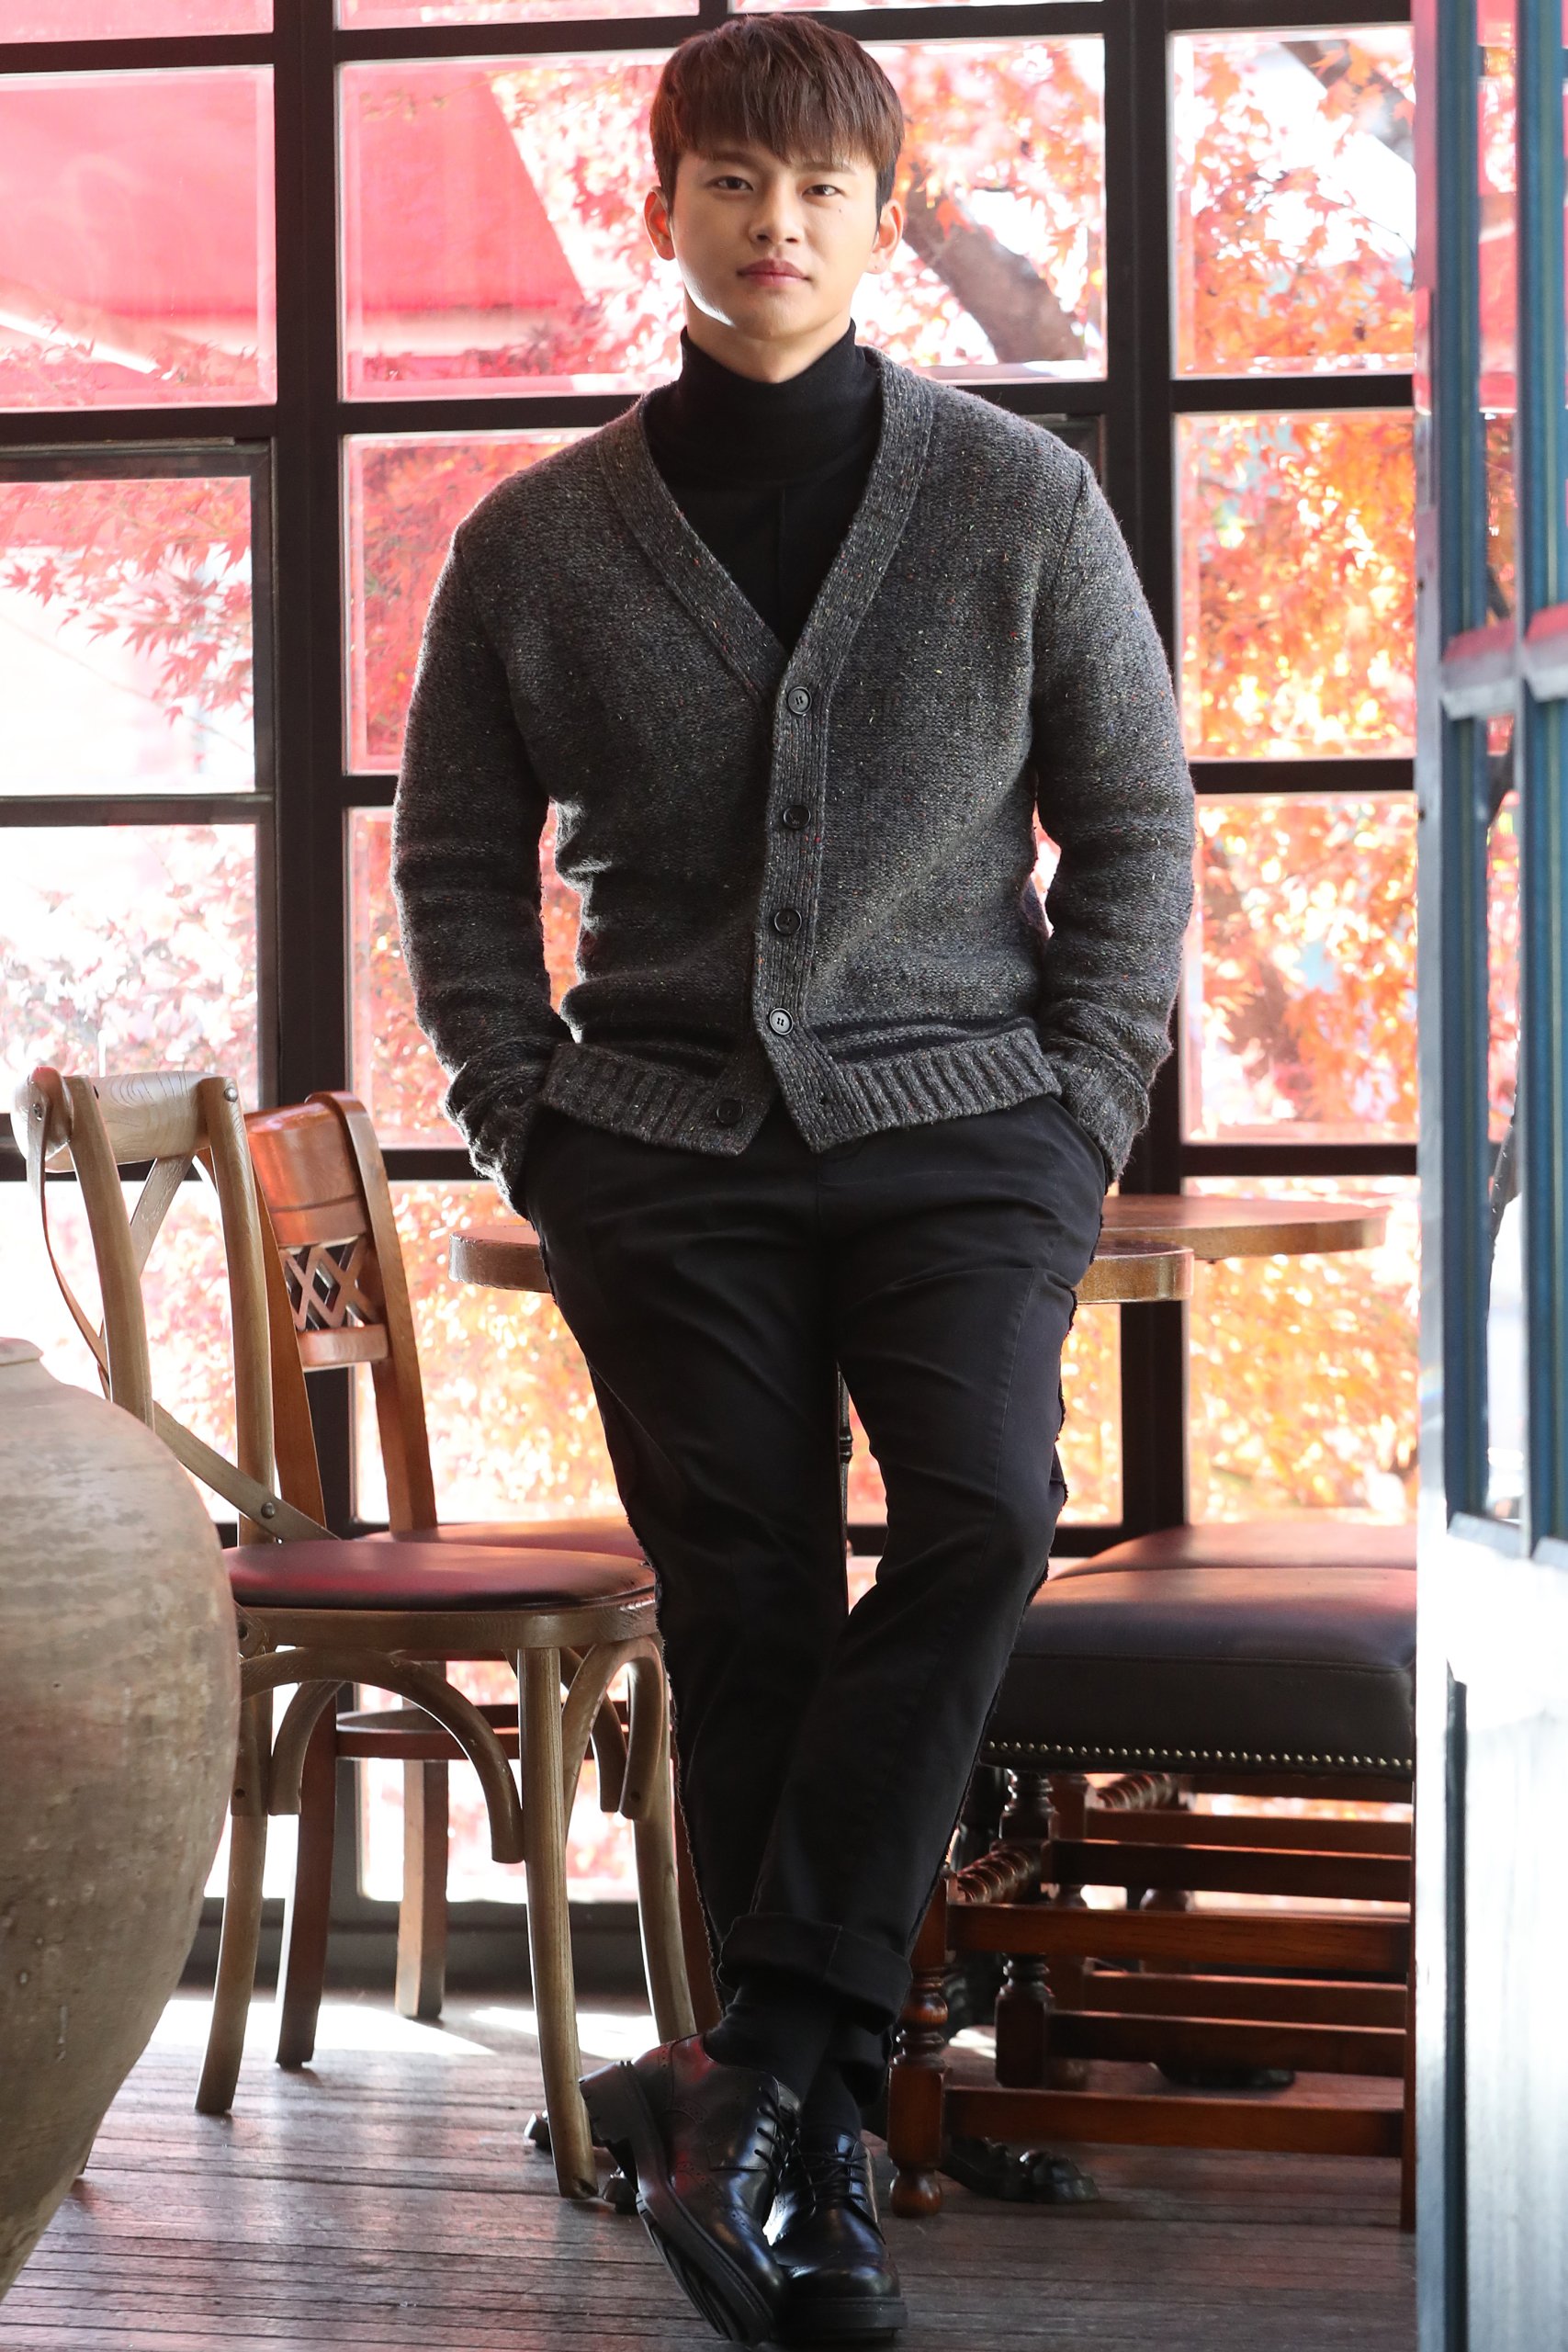 Vネックカーディガンを着こなすコツは スナップをもとにメンズコーデサンプルを紹介 メンズファッションメディア Otokomae 男前研究所 ページ 3 ページ 3